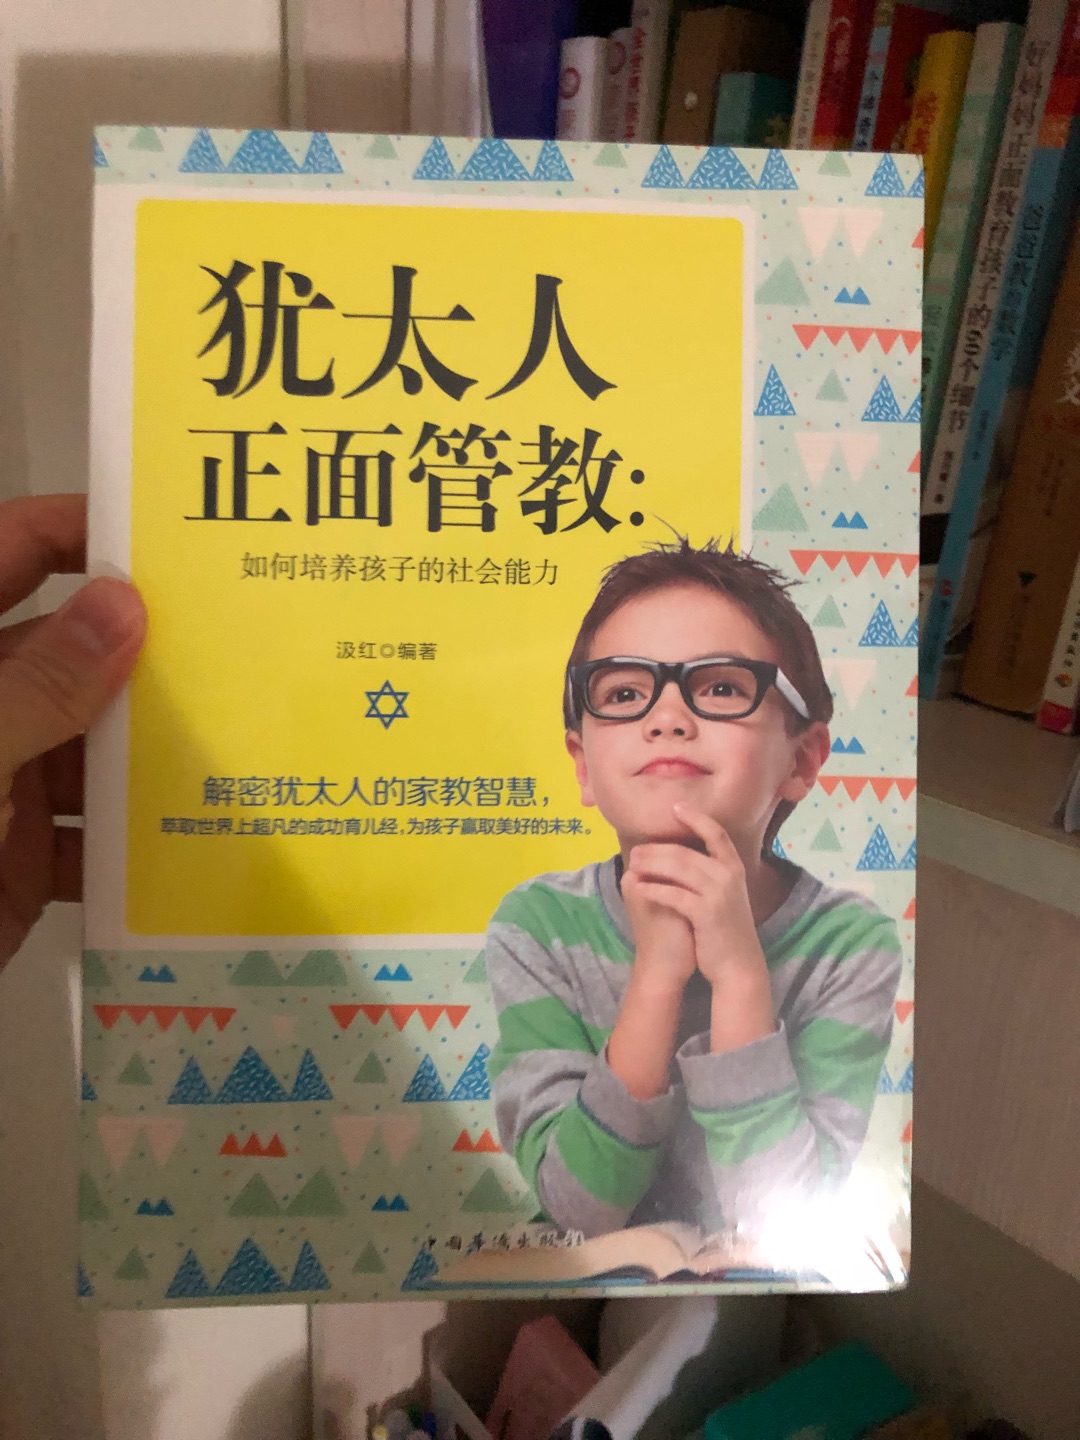 刚好看一个电视节目，一个香港女人嫁给犹太人，讲到孩子教养问题的，与咱们中国人还是很大区别，刚好看到有这本书买来了解一下